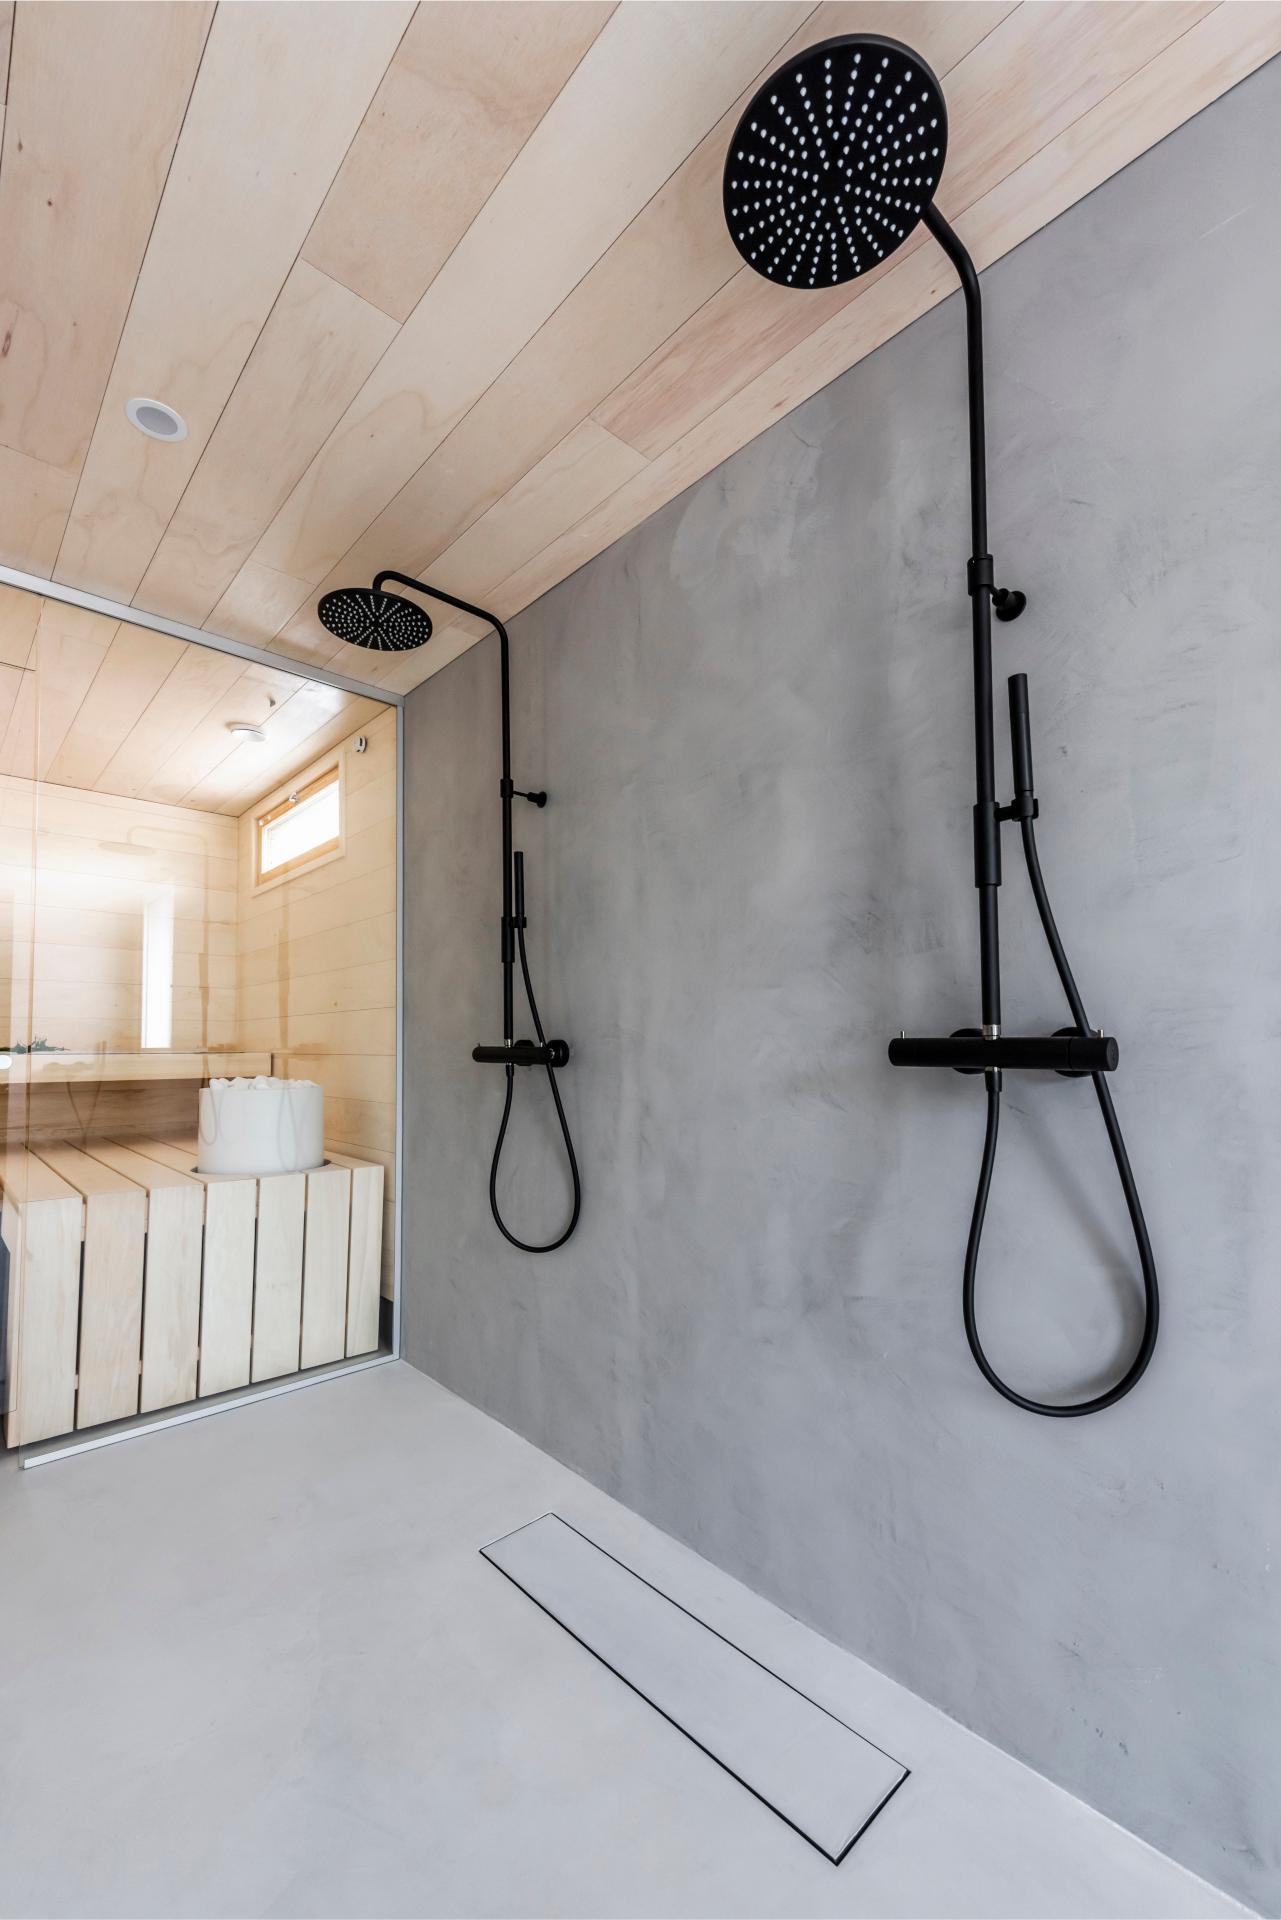 Vieser Line mahdollistaa kylpyhuoneen yhtenäisen ja harmonisen ilmeen, sillä kaivonkannen voi halutessaan täyttää esimerkiksi samalla mikrosementtimassalla, jota lattiassa on käytetty.